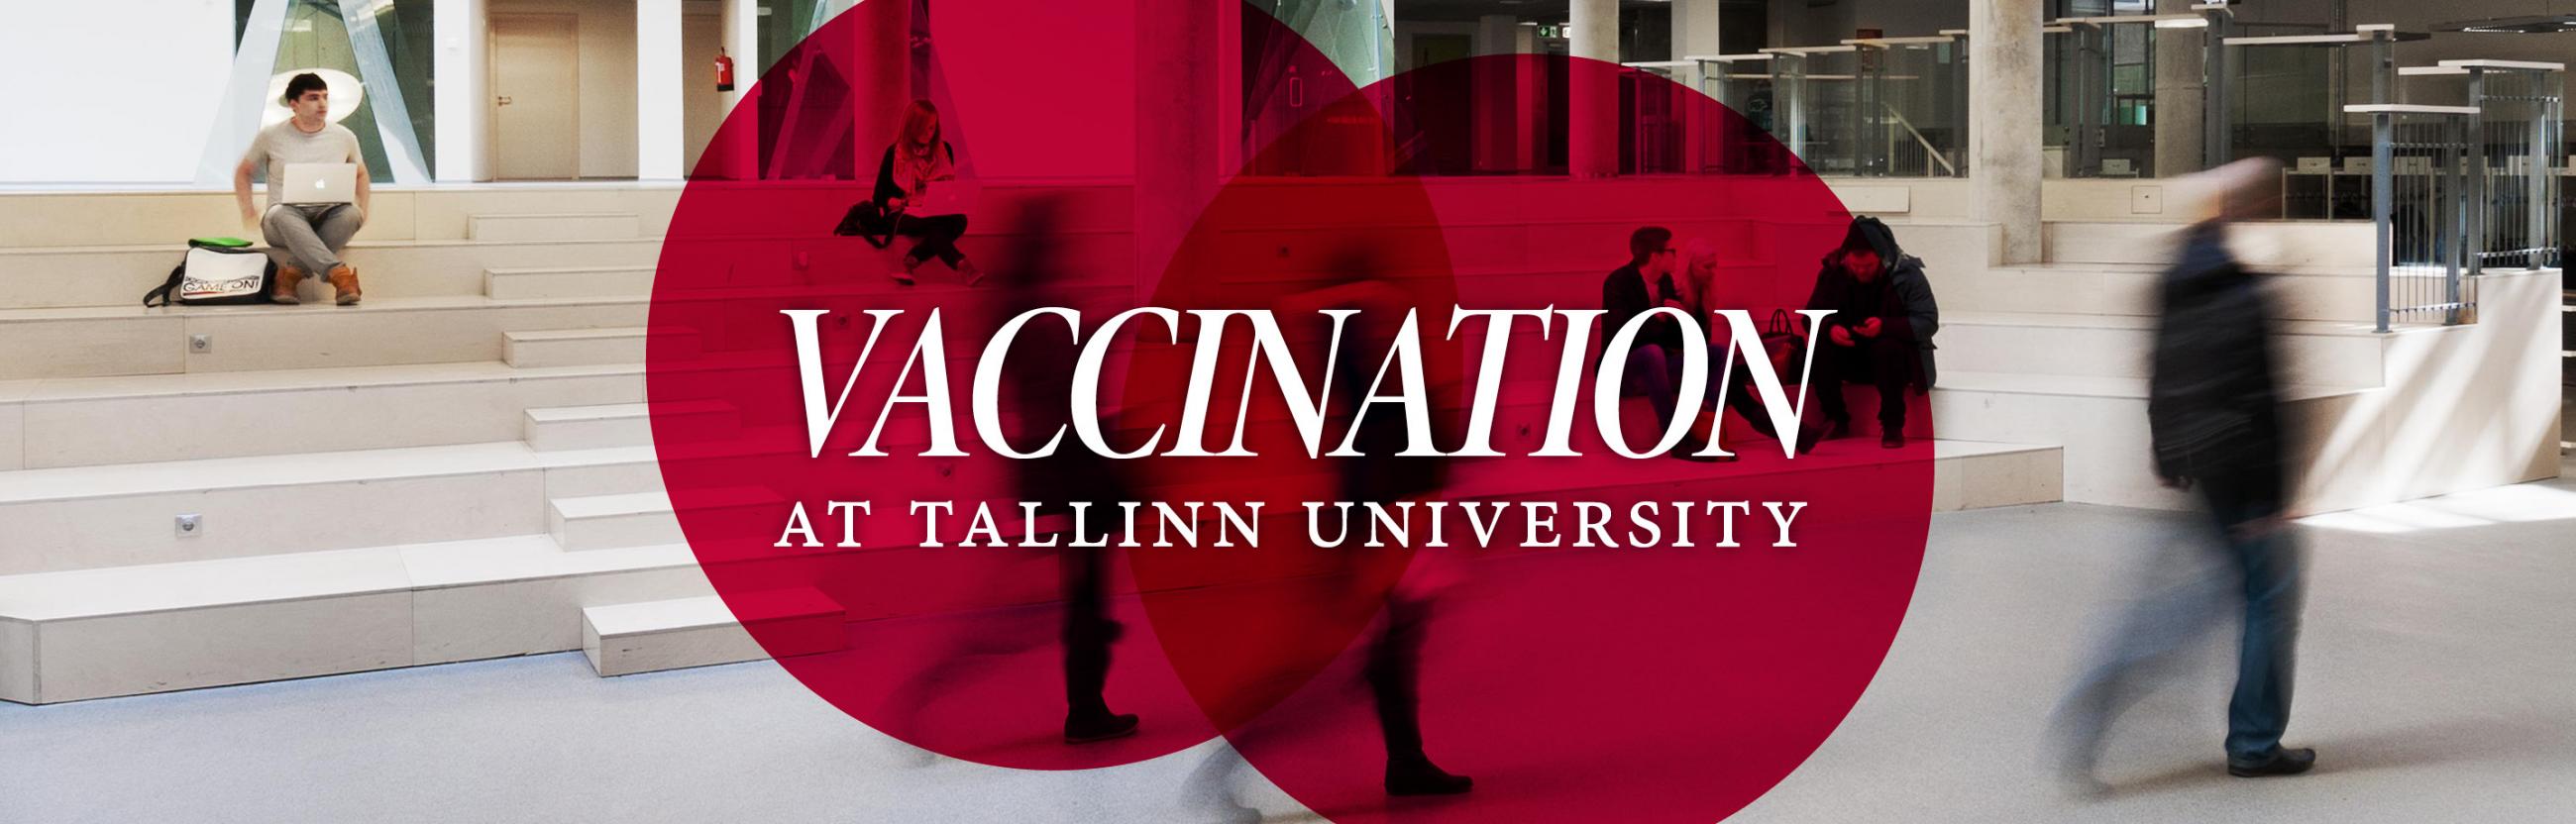 Vaccination at Tallinn University